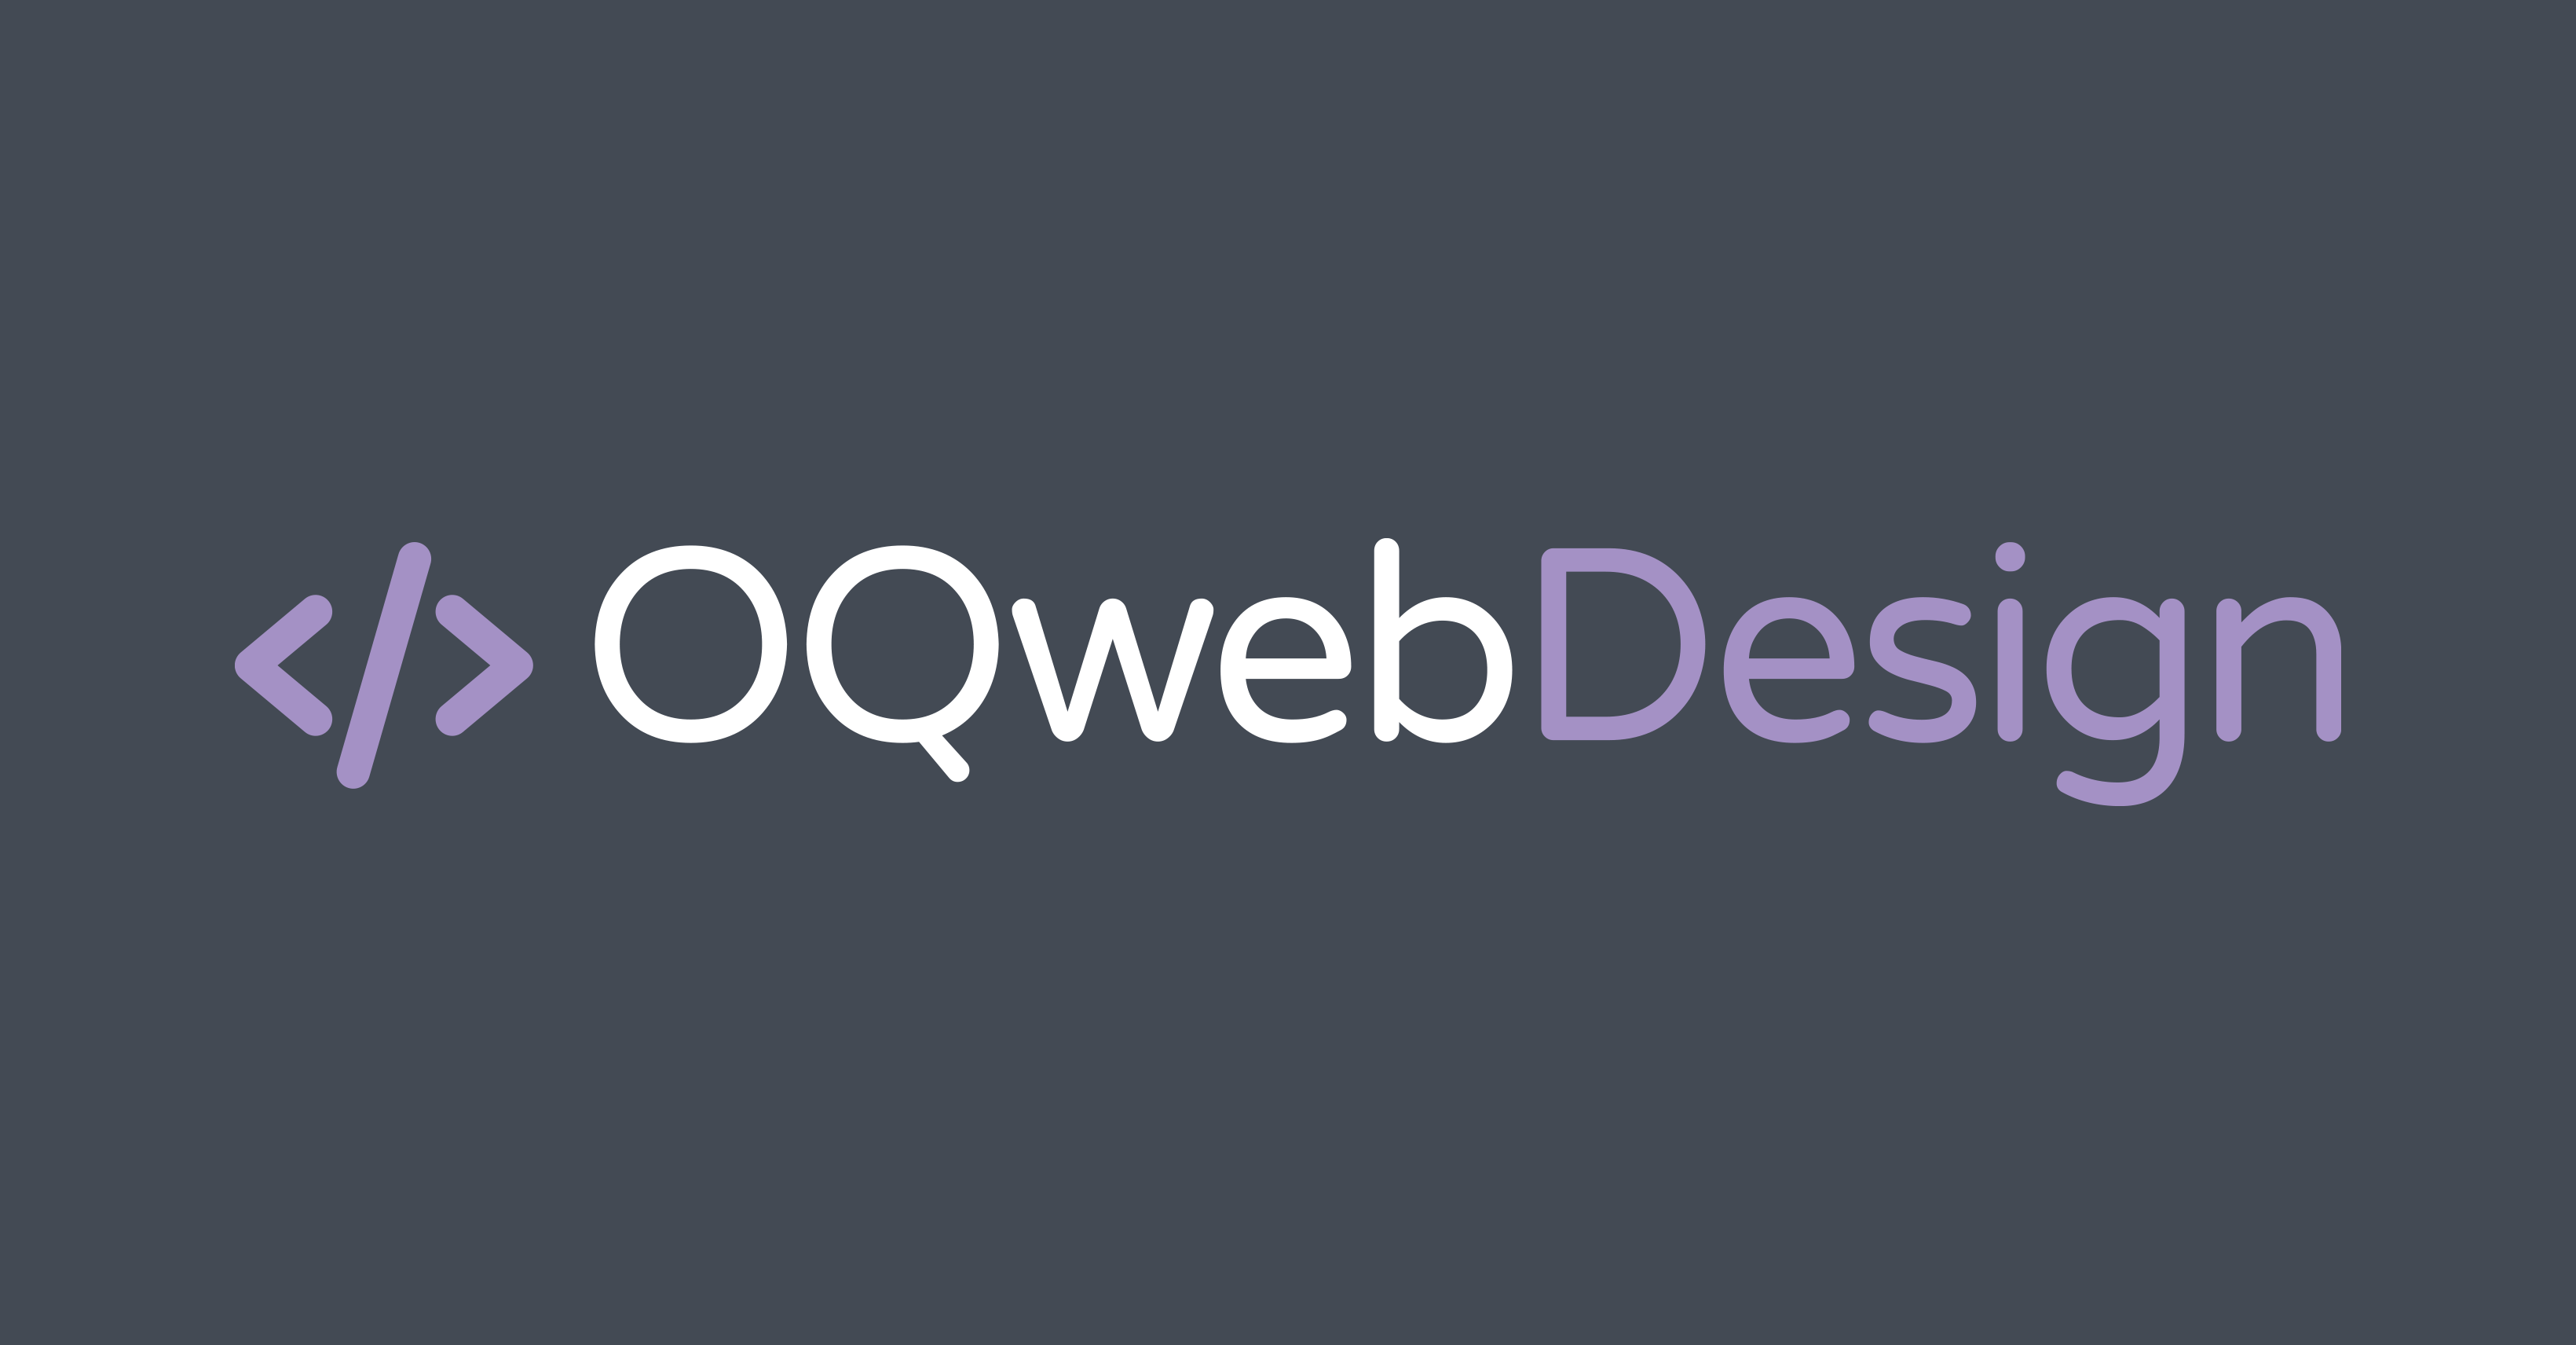 (c) Oqwebdesign.com